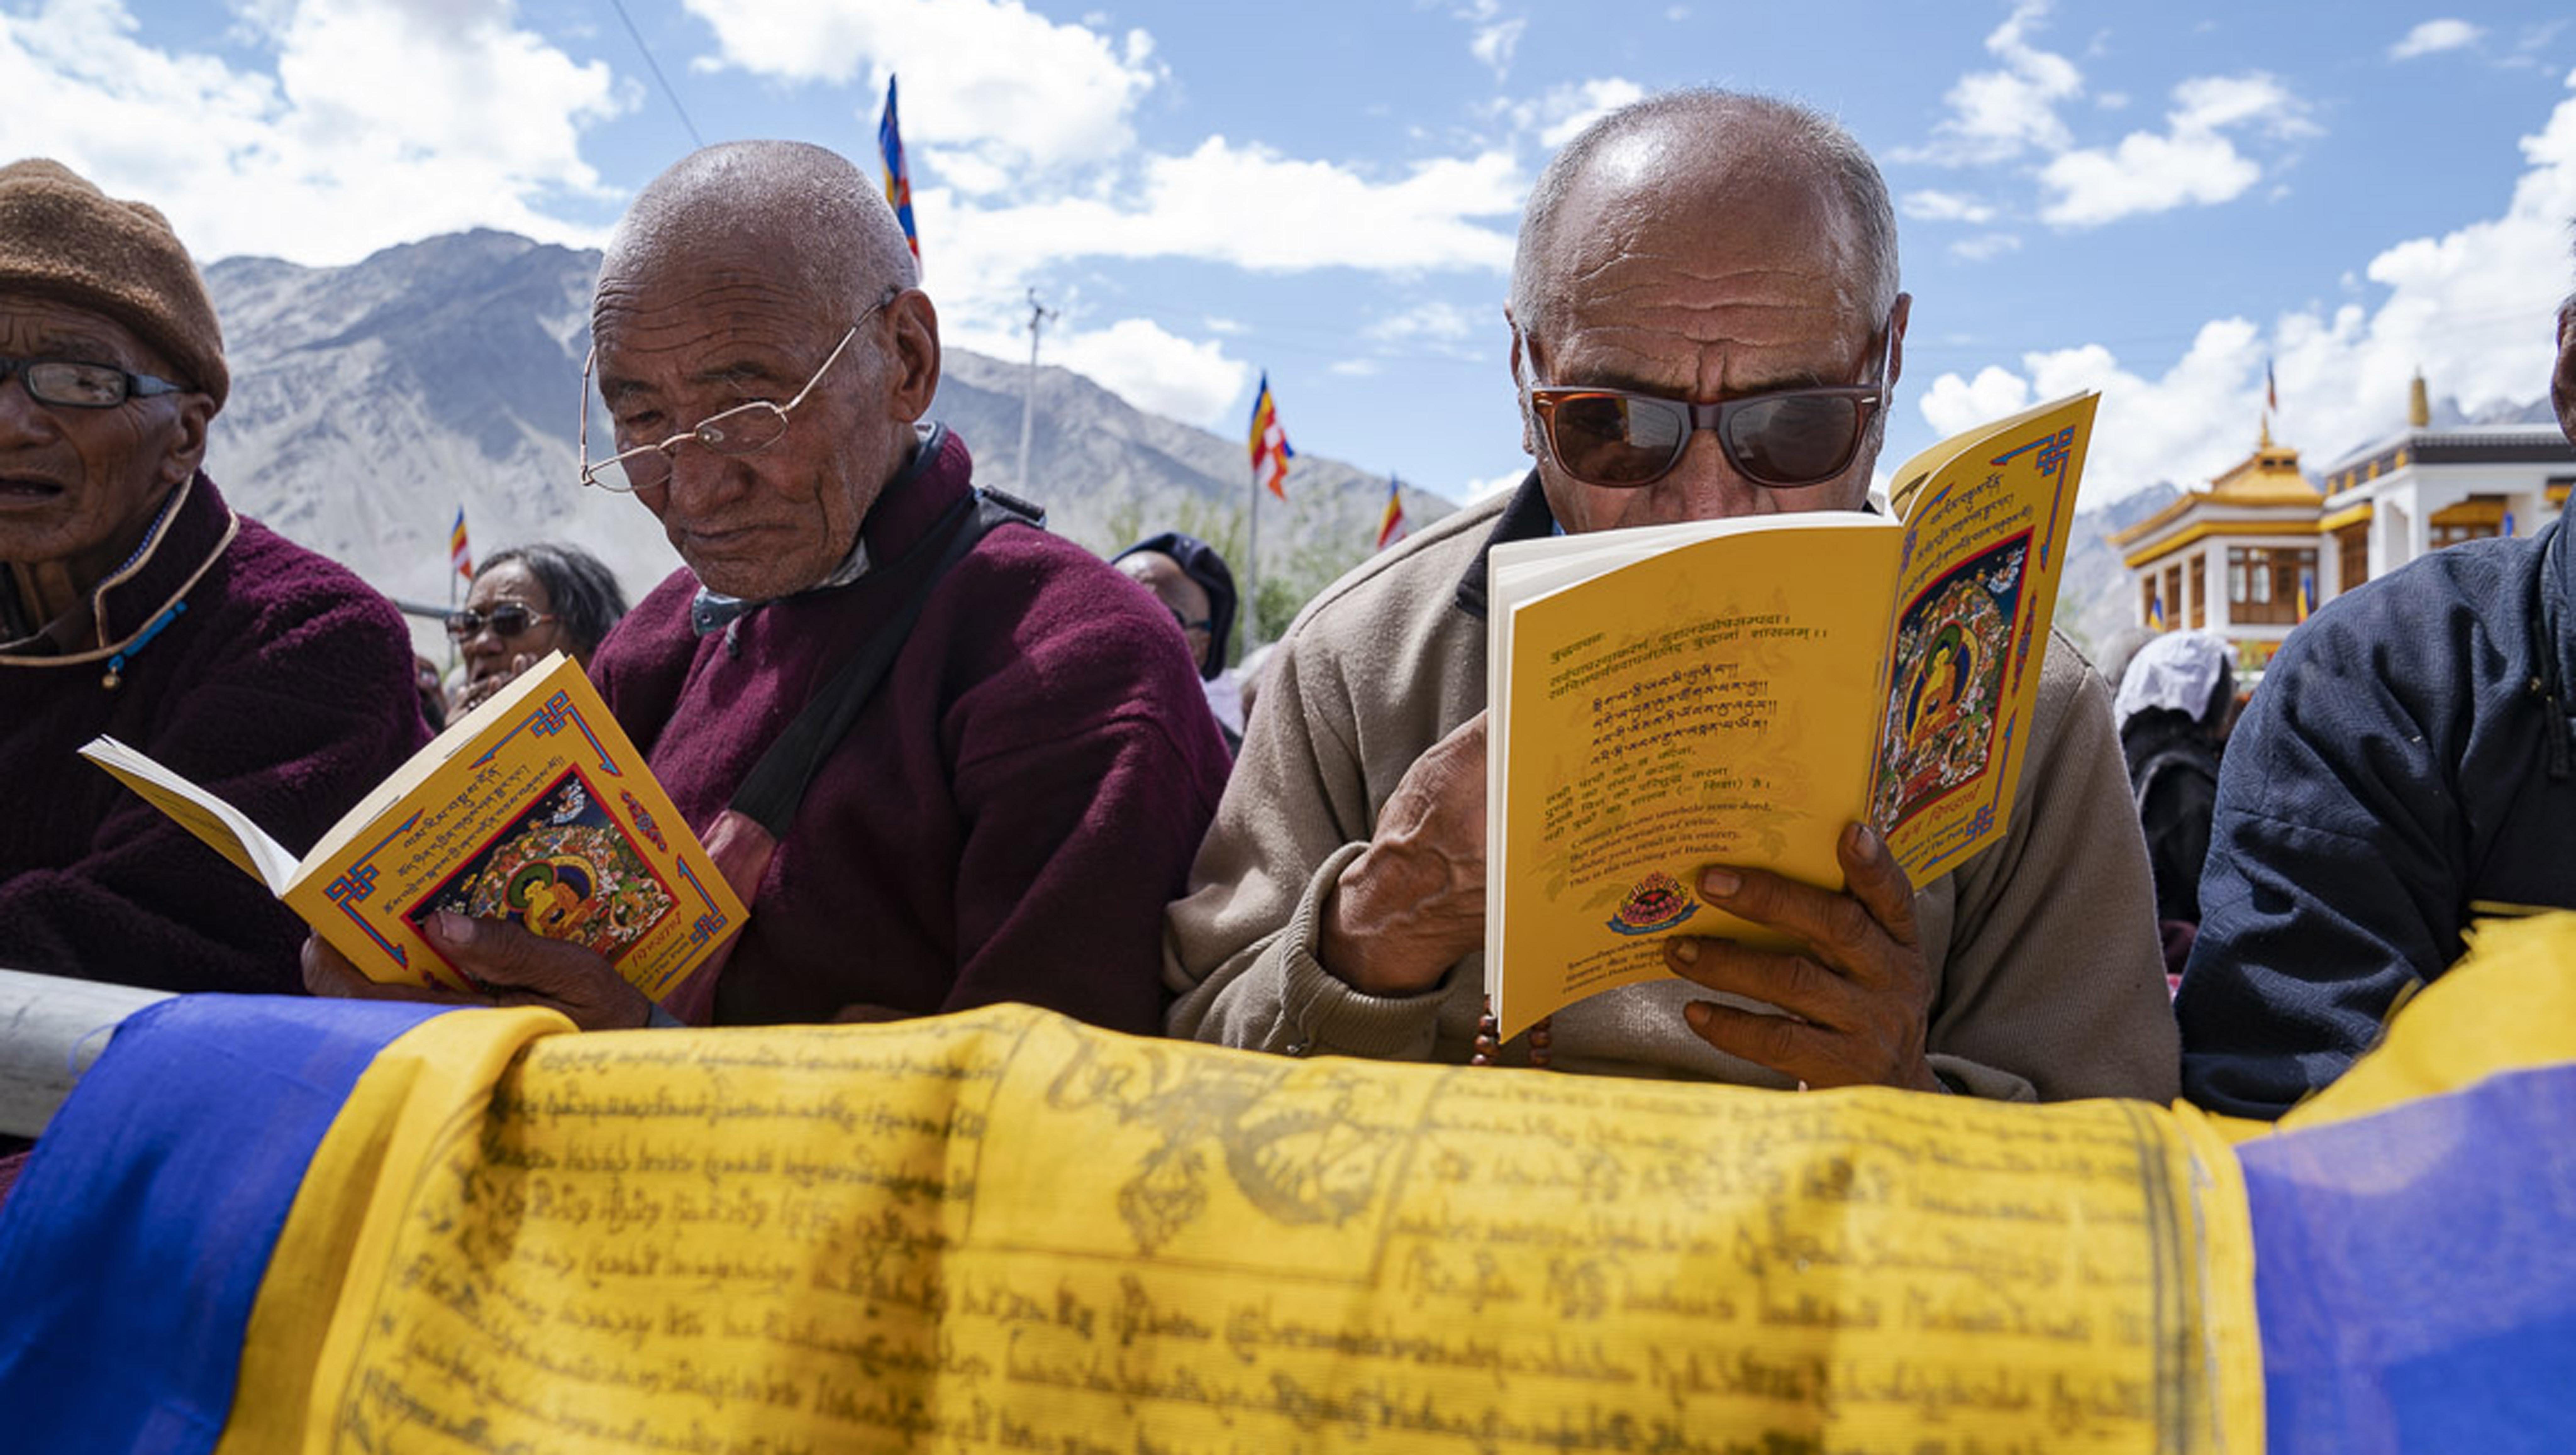  Miembros de la audiencia siguiendo el texto durante la enseñanza de Su Santidad el Dalái Lama en Padum, Zanskar, J&K, India el 22 de julio de 2018. Foto de Tenzin Choejor